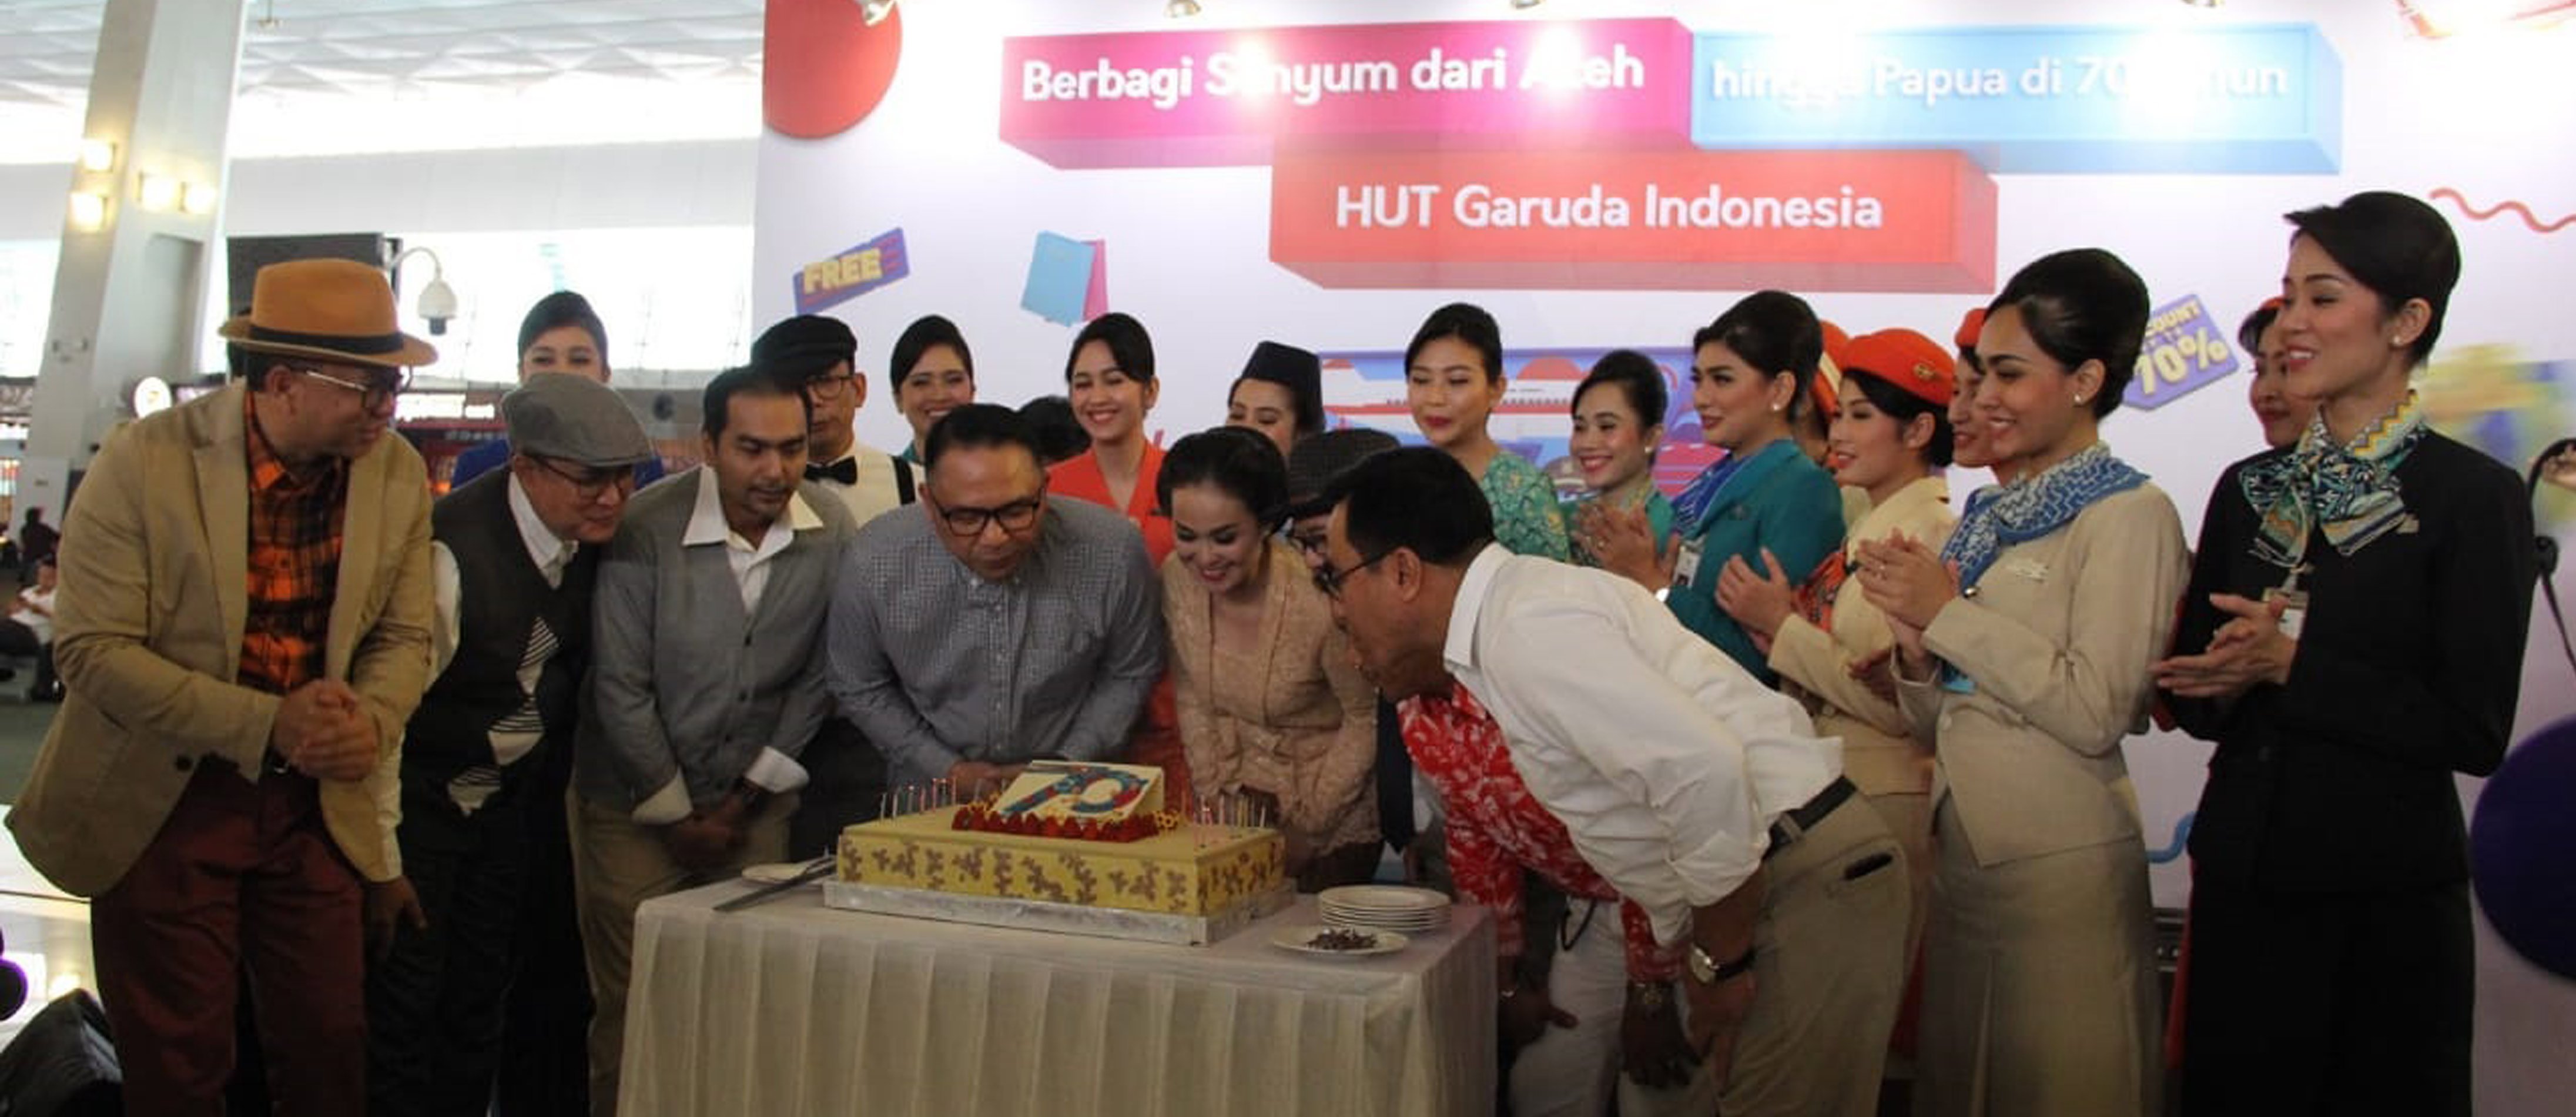 Peringati HUT ke 70, Garuda Indonesia Gelar Program "Berbagi Senyum dari Aceh Sampai Papua"